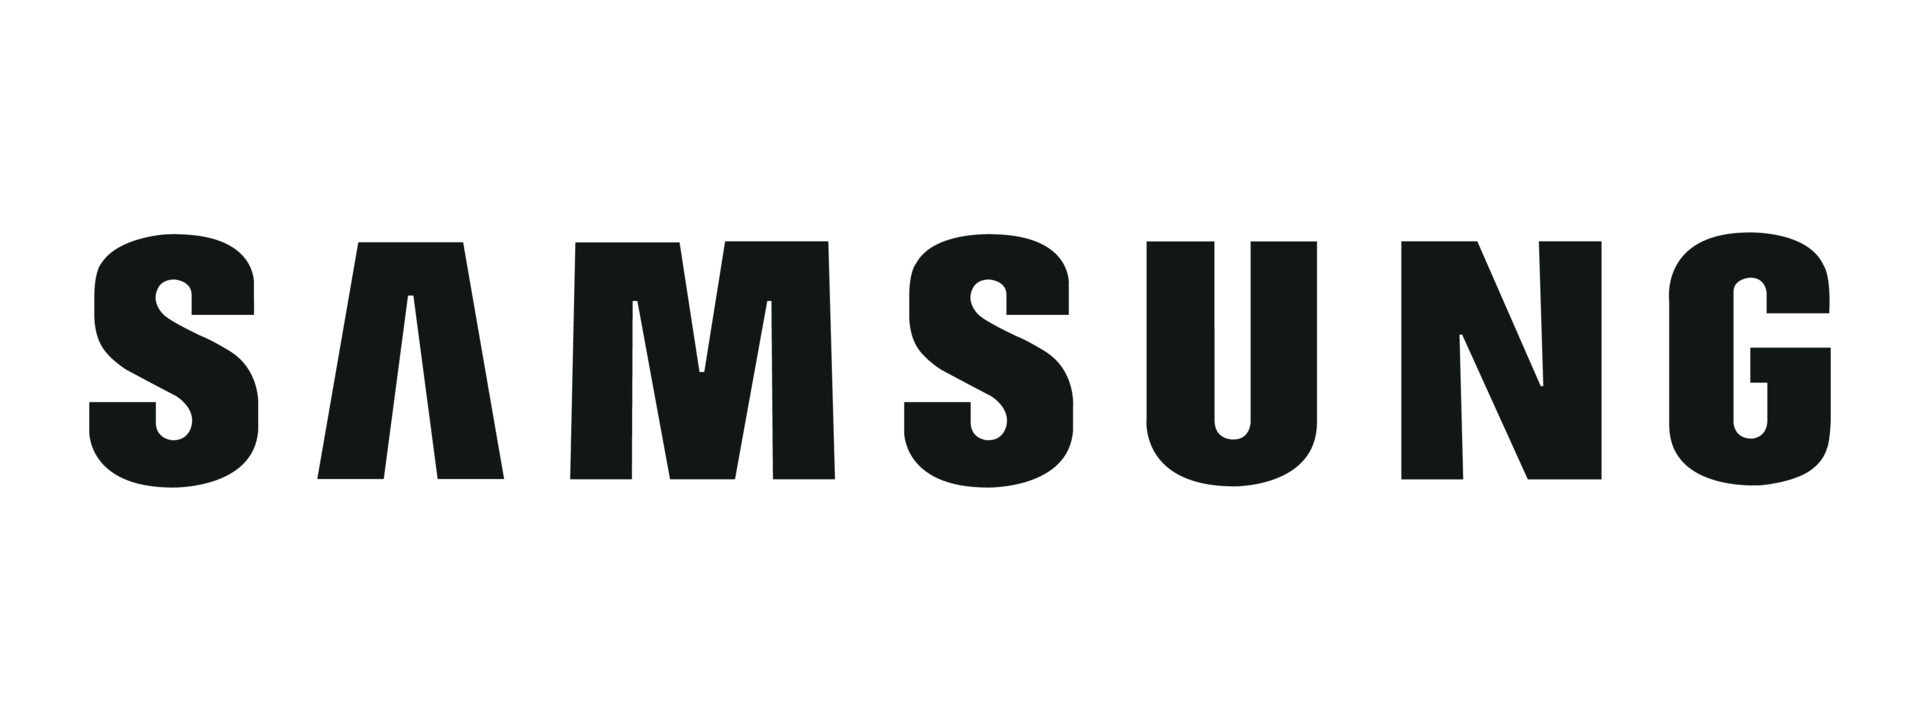 ثلاجة سامسونج بابين - ثلاجات Samsung بابين